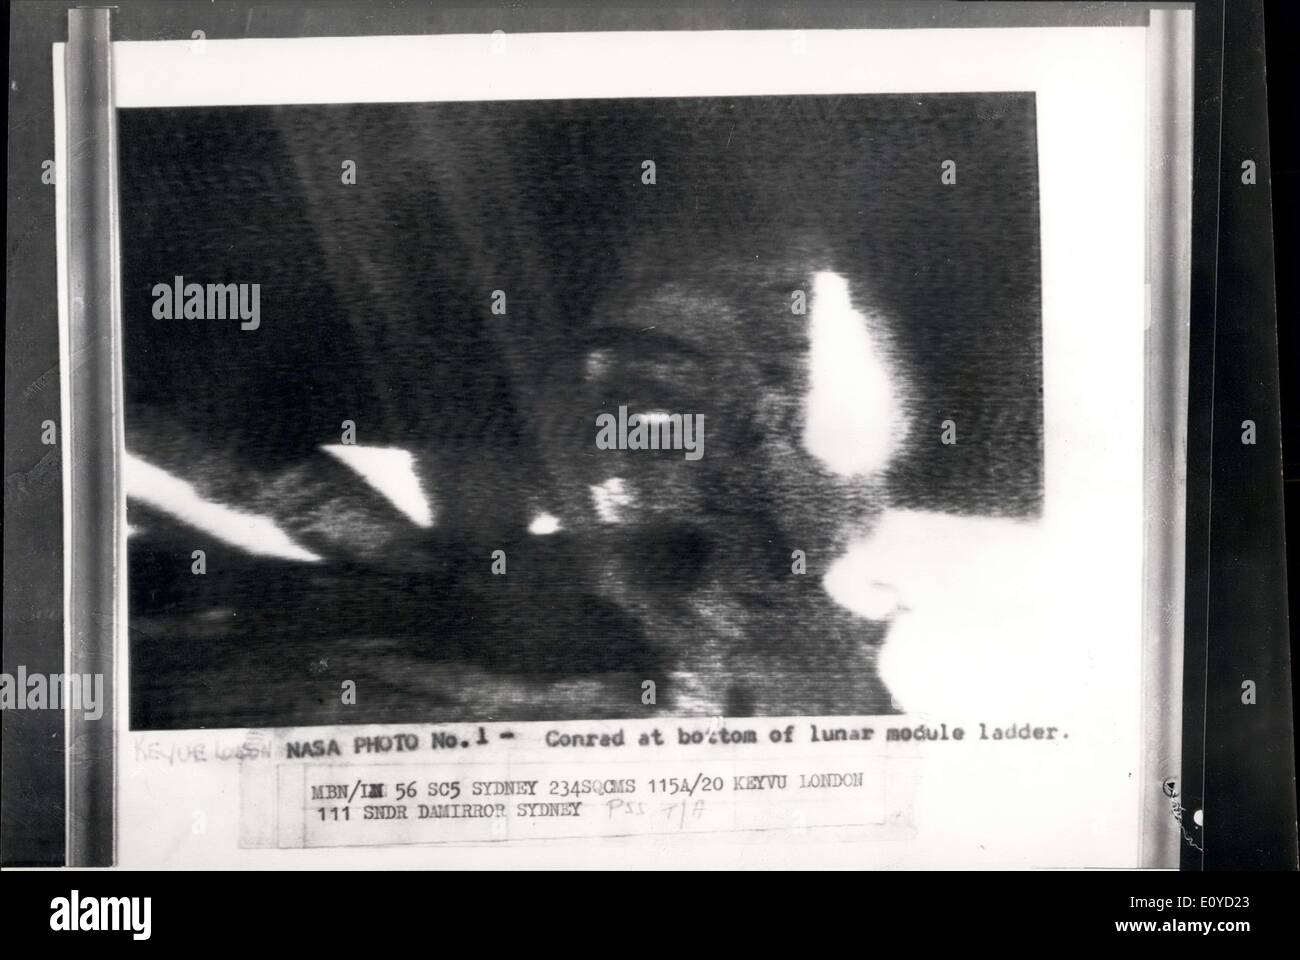 Le 20 novembre, 1969 - Caméra de télévision échoue sur Moon Walk. Les astronautes américains Pete Conrad et Alan Bean hier est devenu le troisième et quatrième homme jamais de marcher sur la surface de la Lune. Peu après Alan Bean avait démissionné de l'Intrepid pour rejoindre Pete Conrad, un défaut développé dans la caméra TV. Photo montre :- Cette photo de la NASA, a signalé par radio à Londres via Sydney, Australie, Conrad montre au bas de l'échelle. Banque D'Images